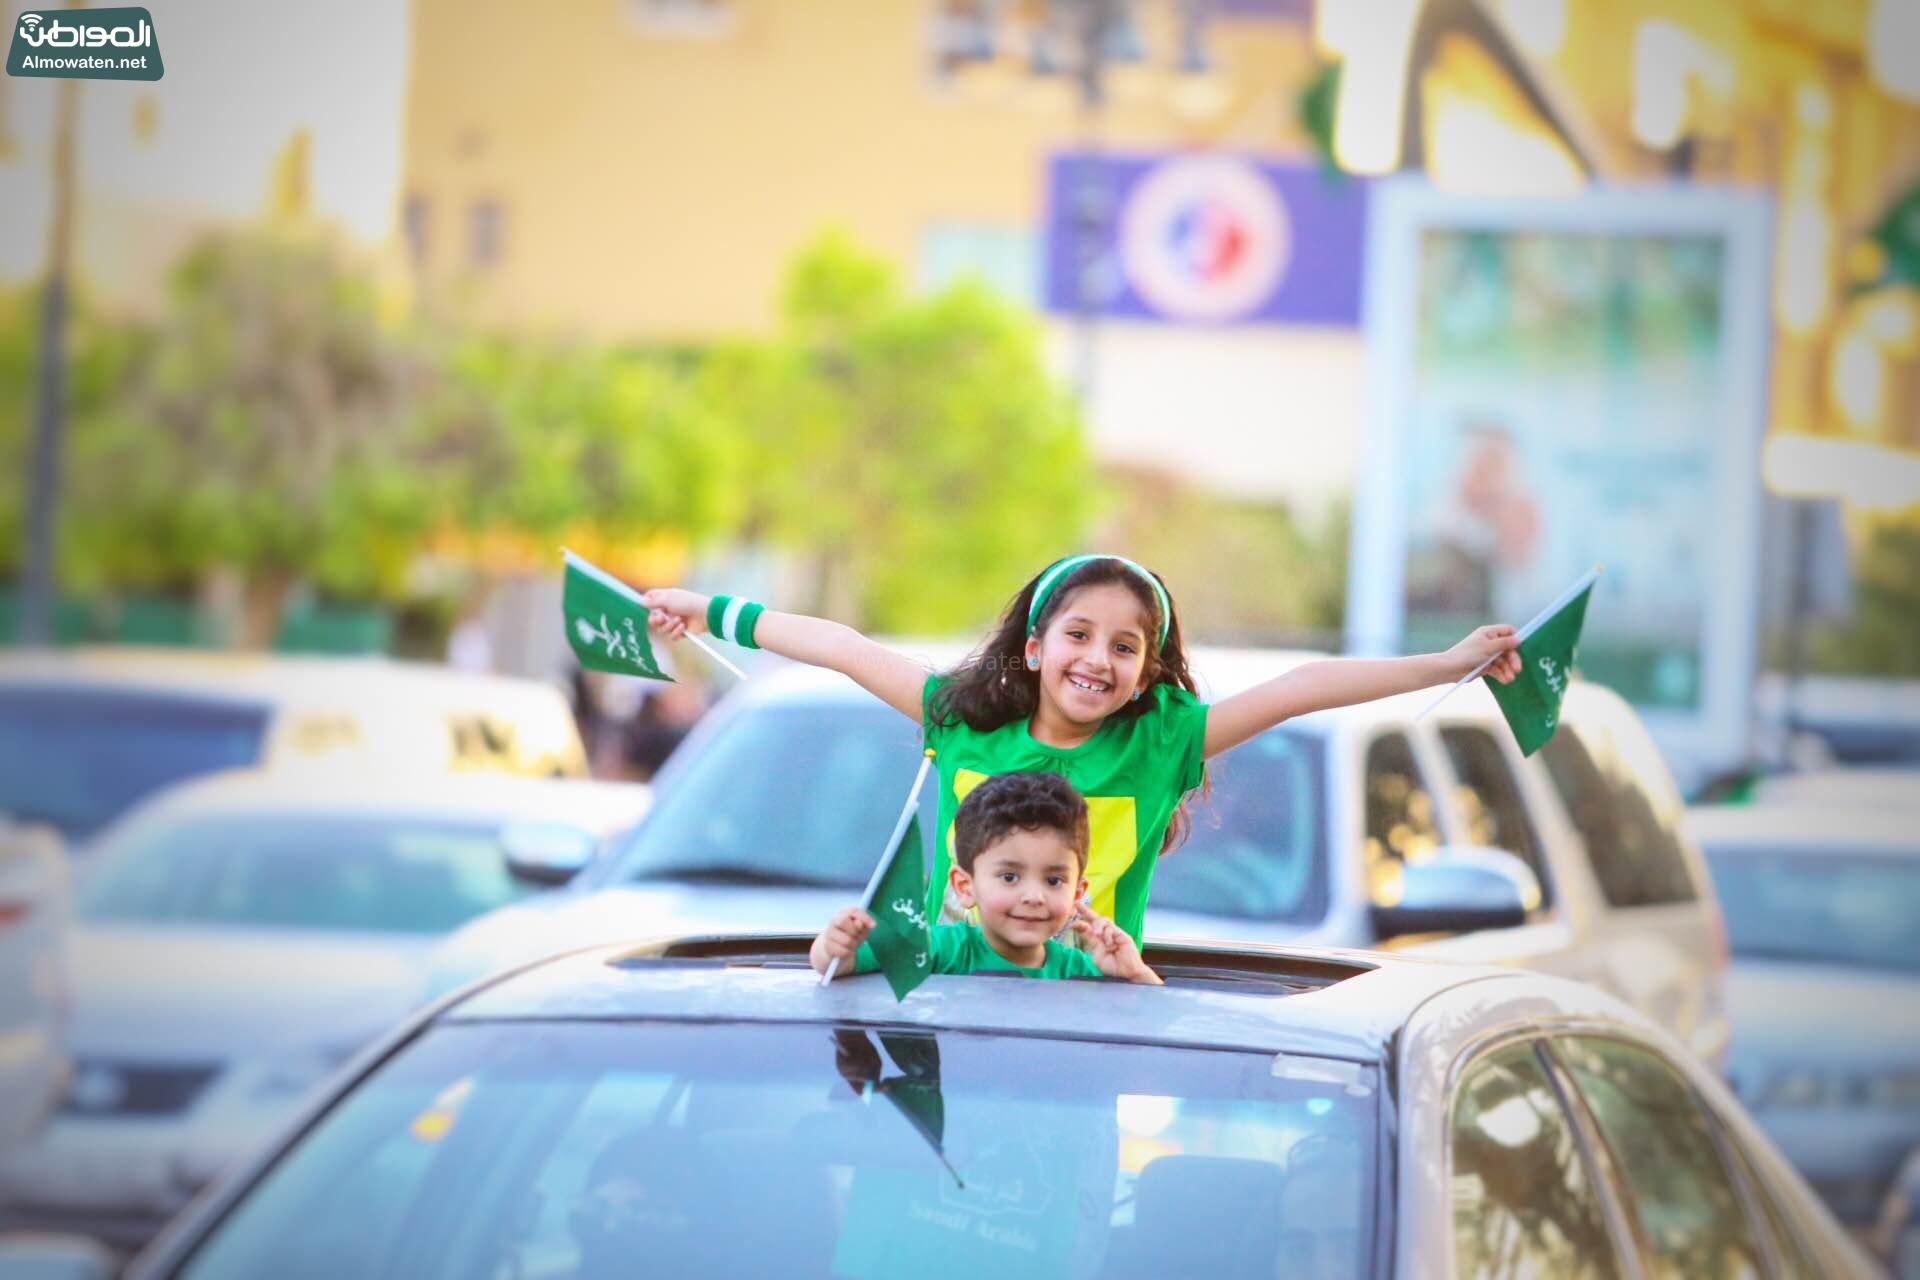 “المواطن” ترصد #اليوم_الوطني في الرياض : صور القيادة والعلم السعودي تُزيّن الاحتفالات